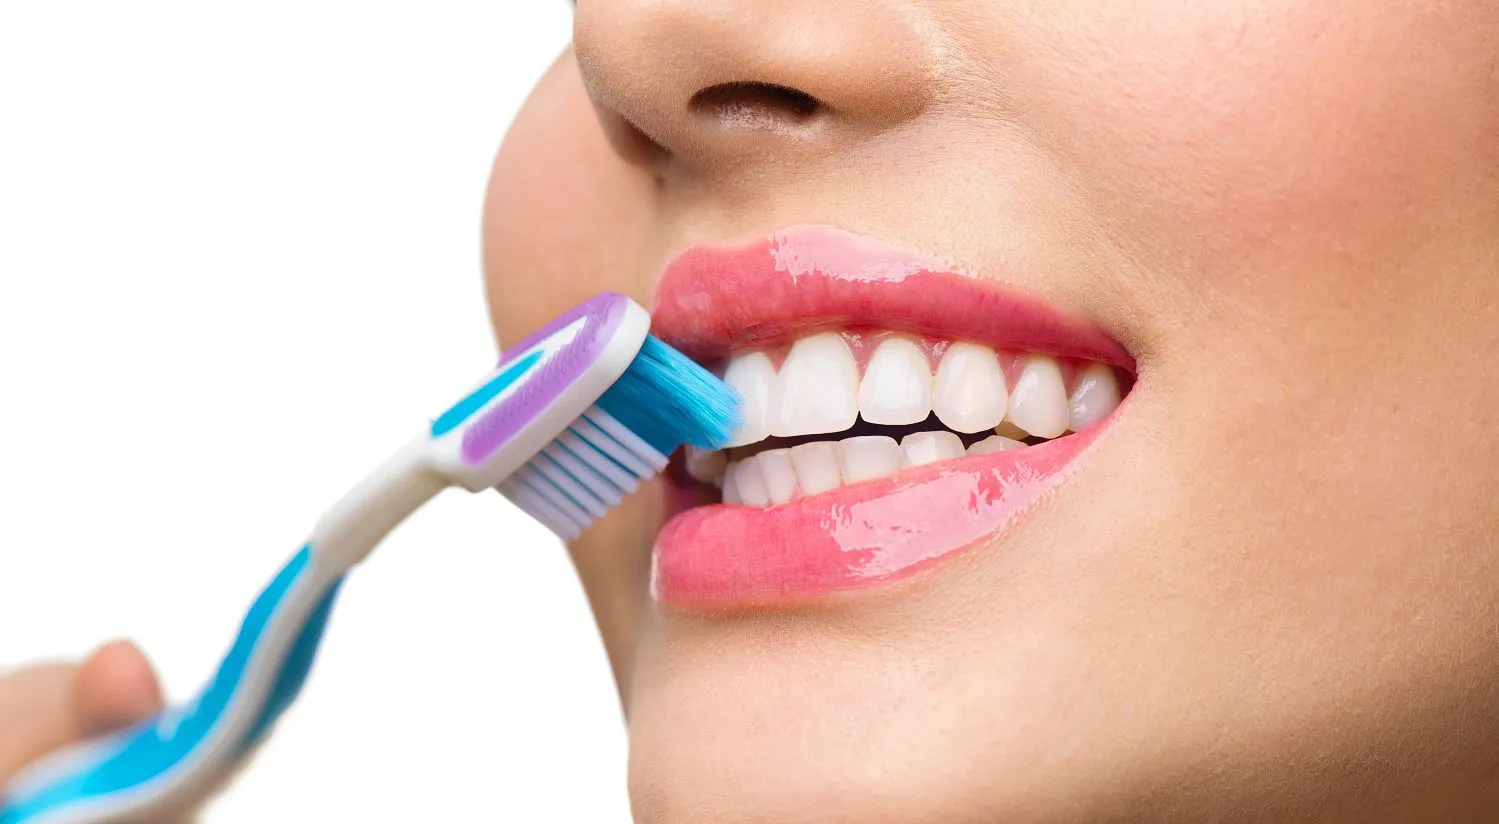 Гигиенический уход полости рта. Гигиена полости рта. Зубы гигиена полости рта. Гигиена полости рта зубные щетки. Индивидуальная и профессиональная гигиена полости рта.